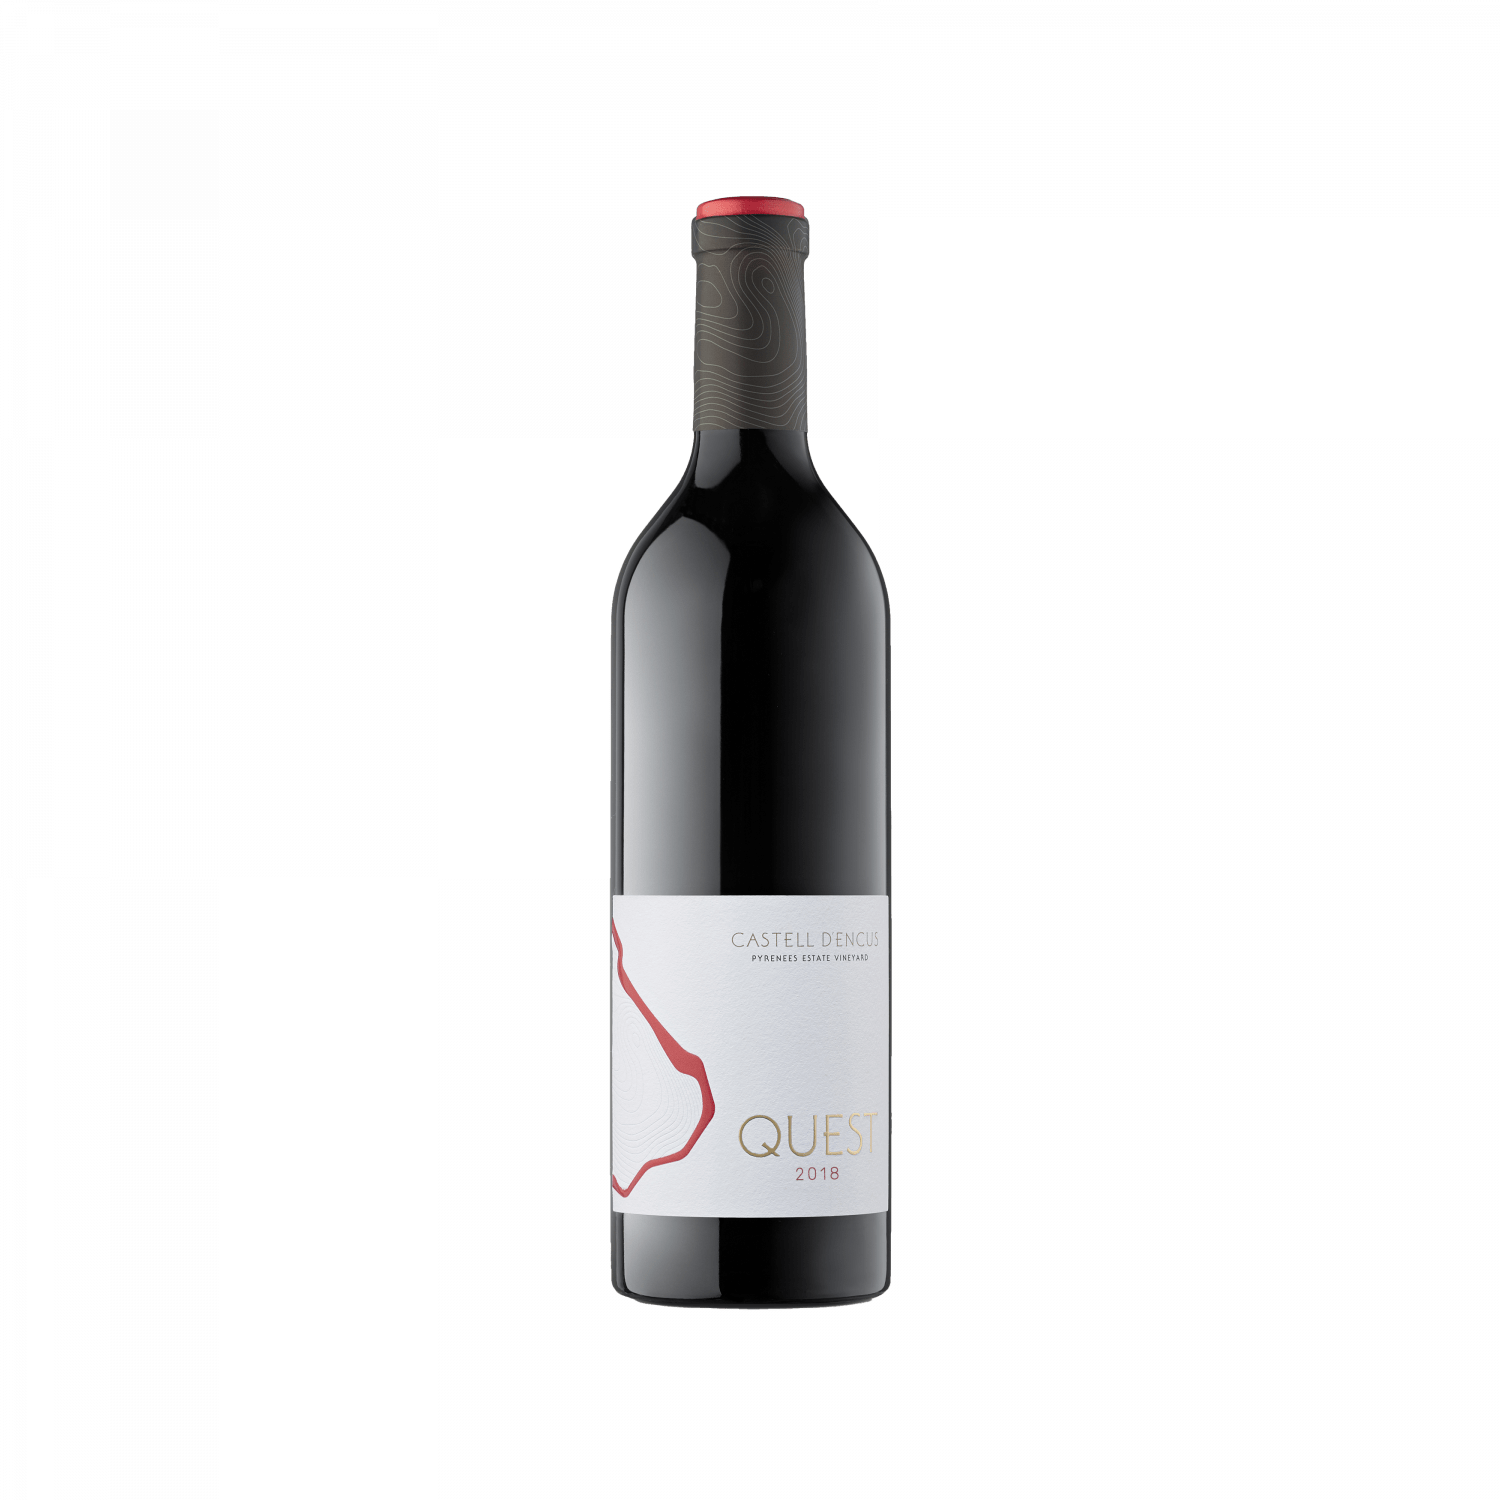 Botella de estudio del vino QUEST 2018